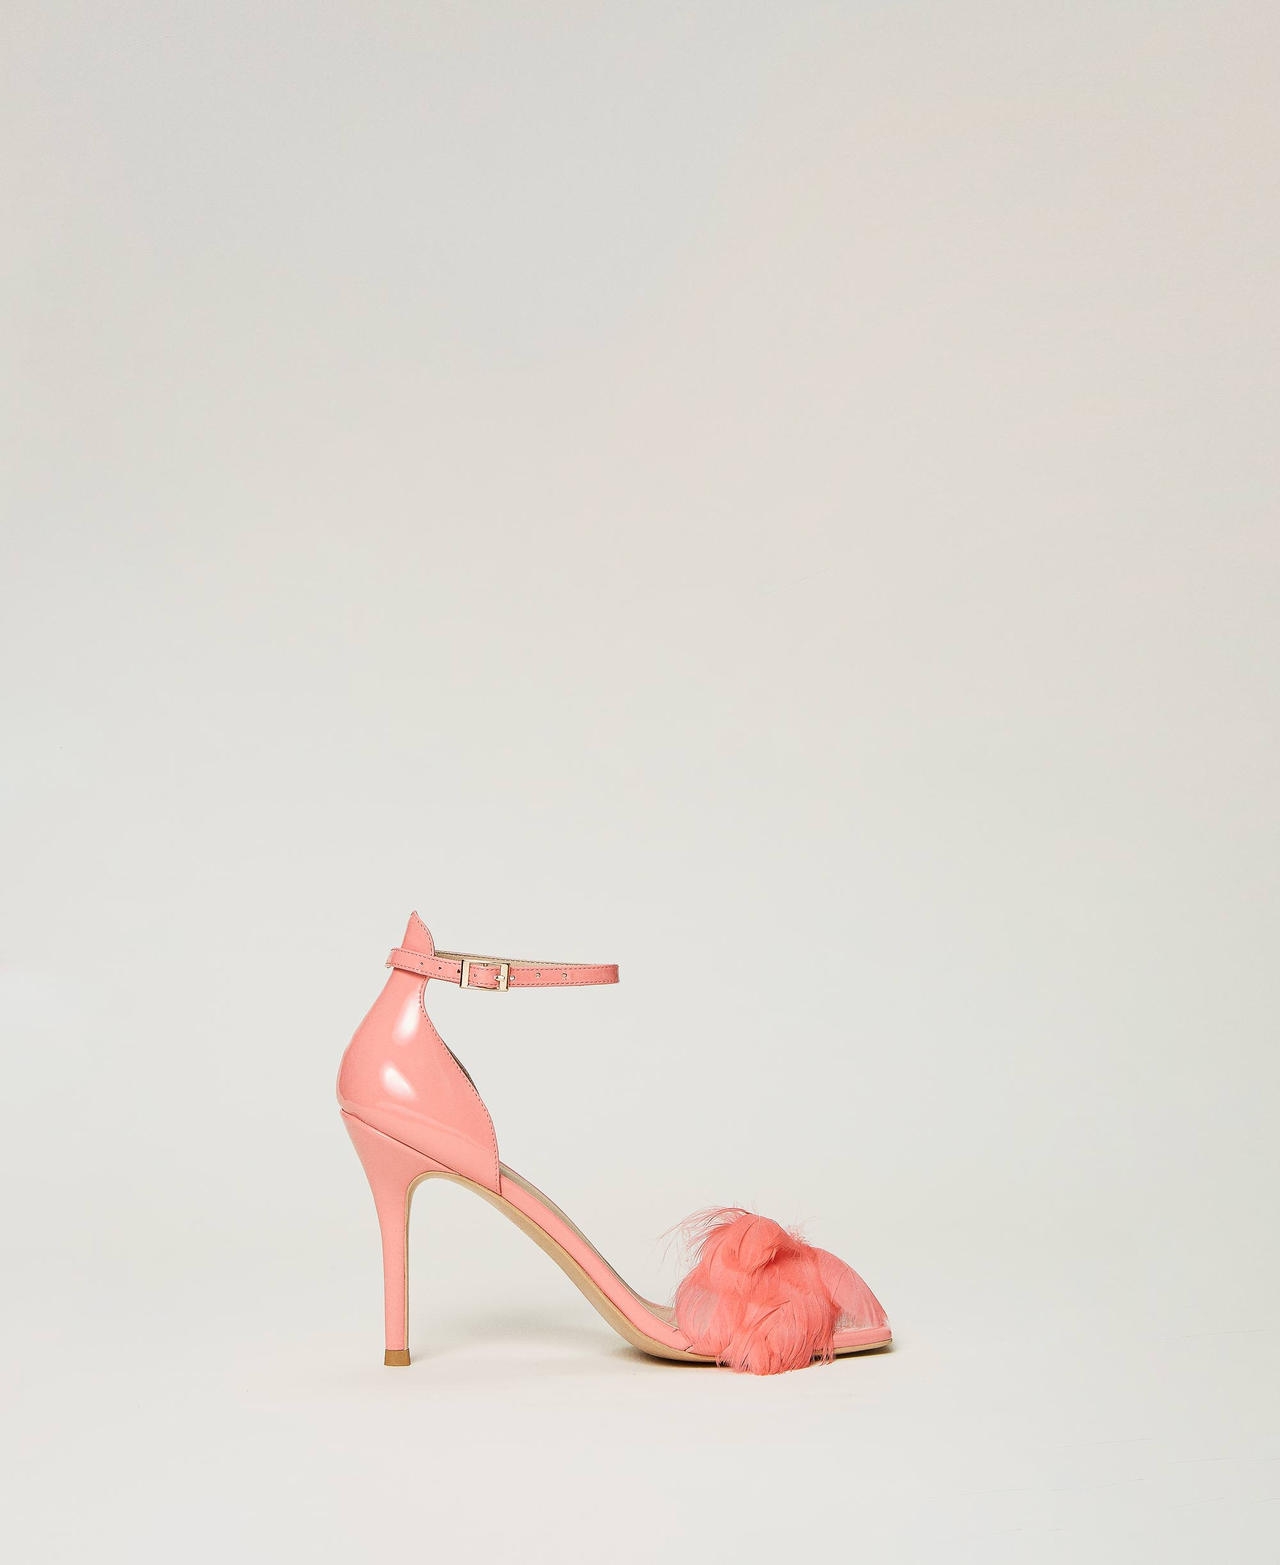 twinset scarpe - sandali in vernice con piume, rosa tropical pink, taglia: 40 donna